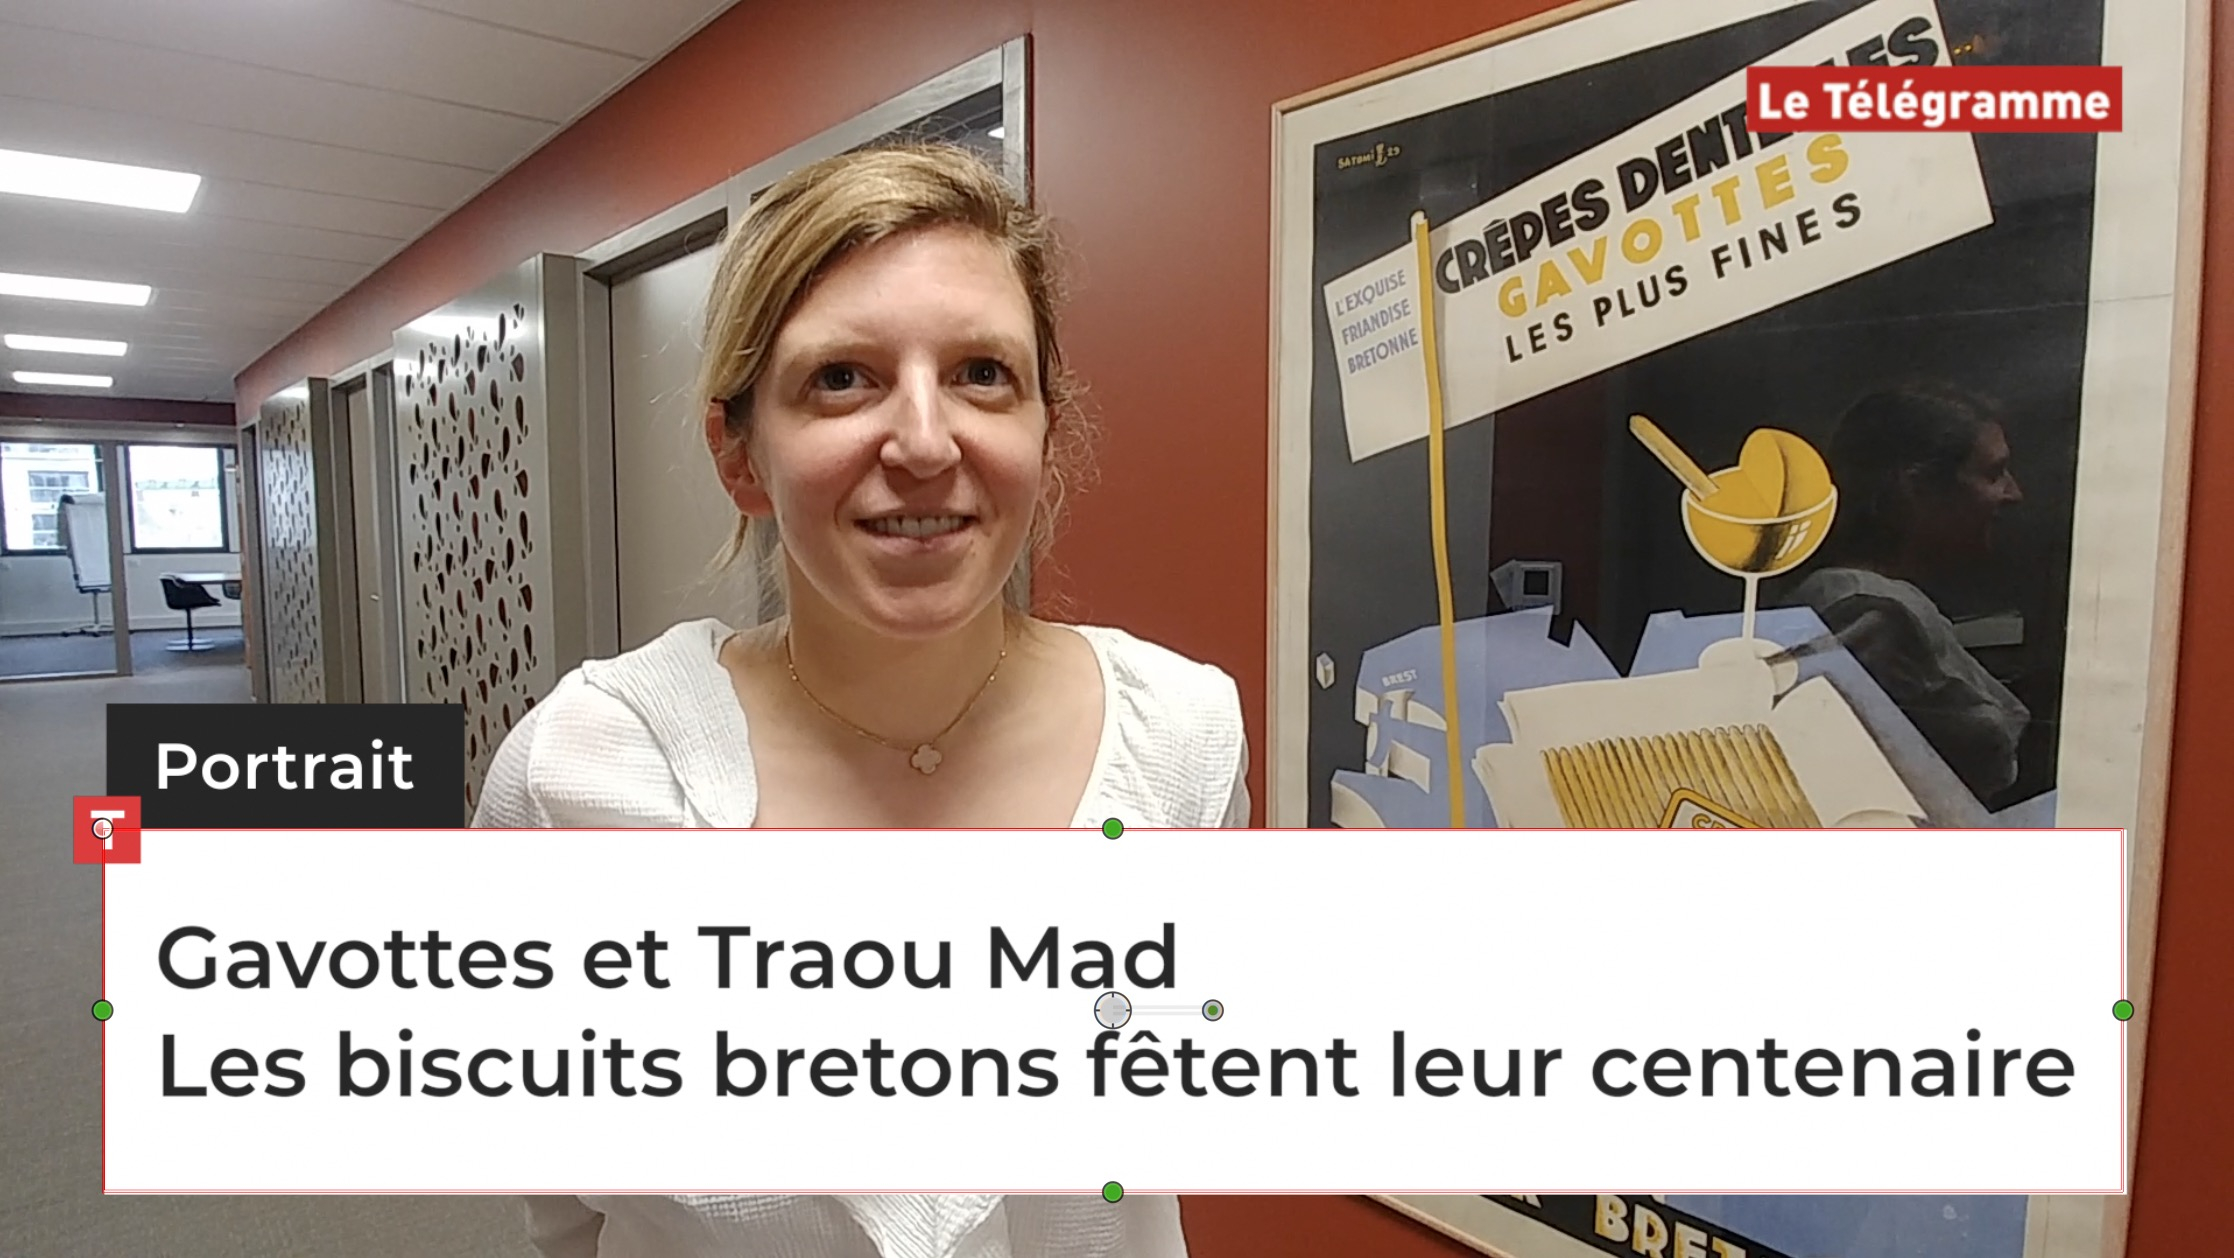 Gavottes et Traou Mad. Les biscuits bretons fêtent leur centenaire (Le Télégramme)